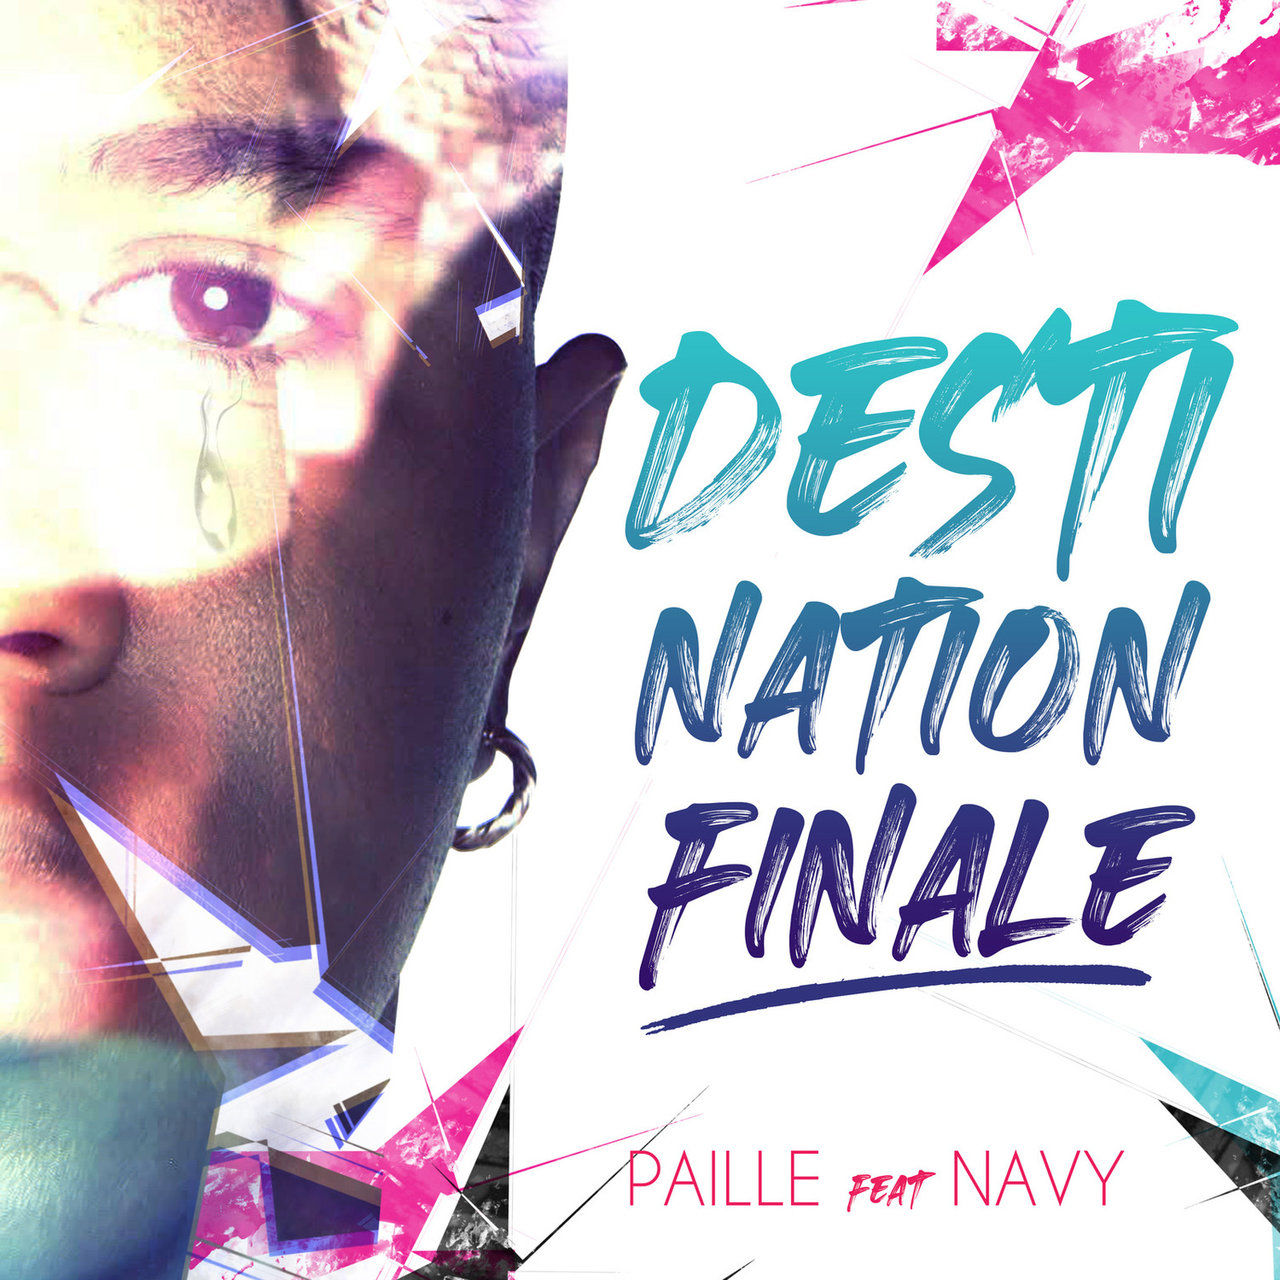 Paille - Destination Finale (ft. Navy) (Cover)